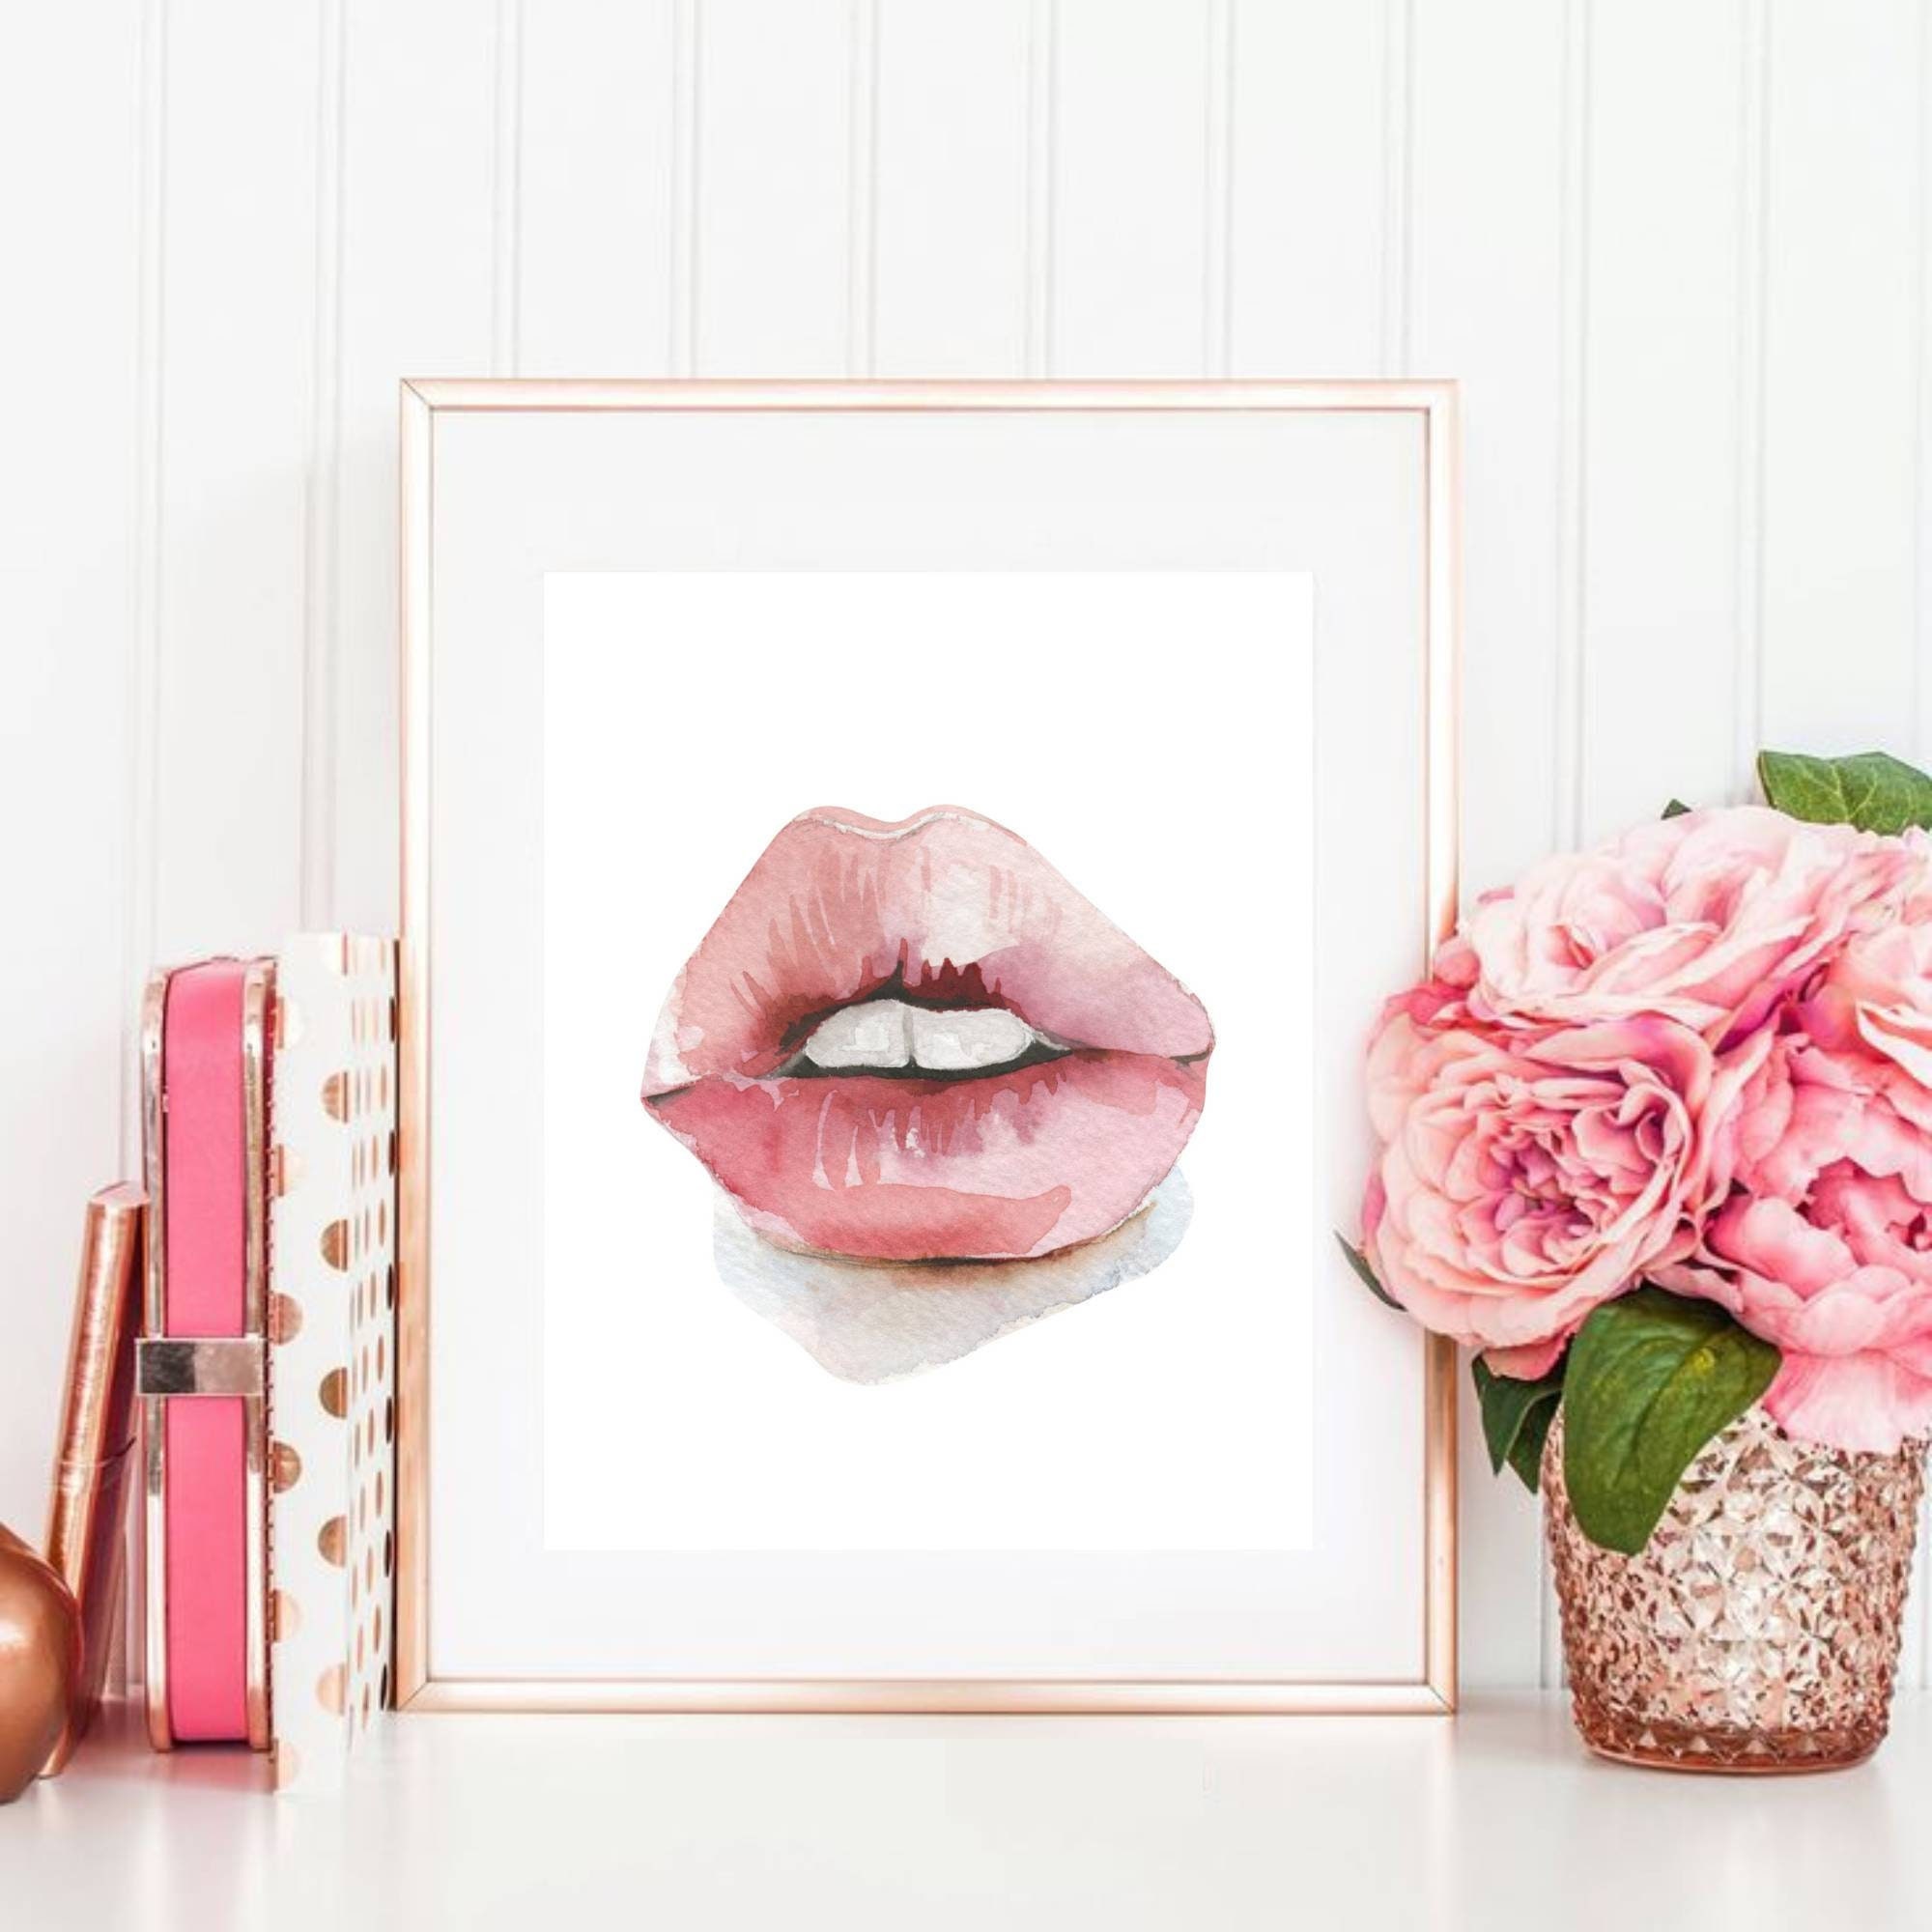 ▷ LV pink lips by Sarah B., 2020, Print